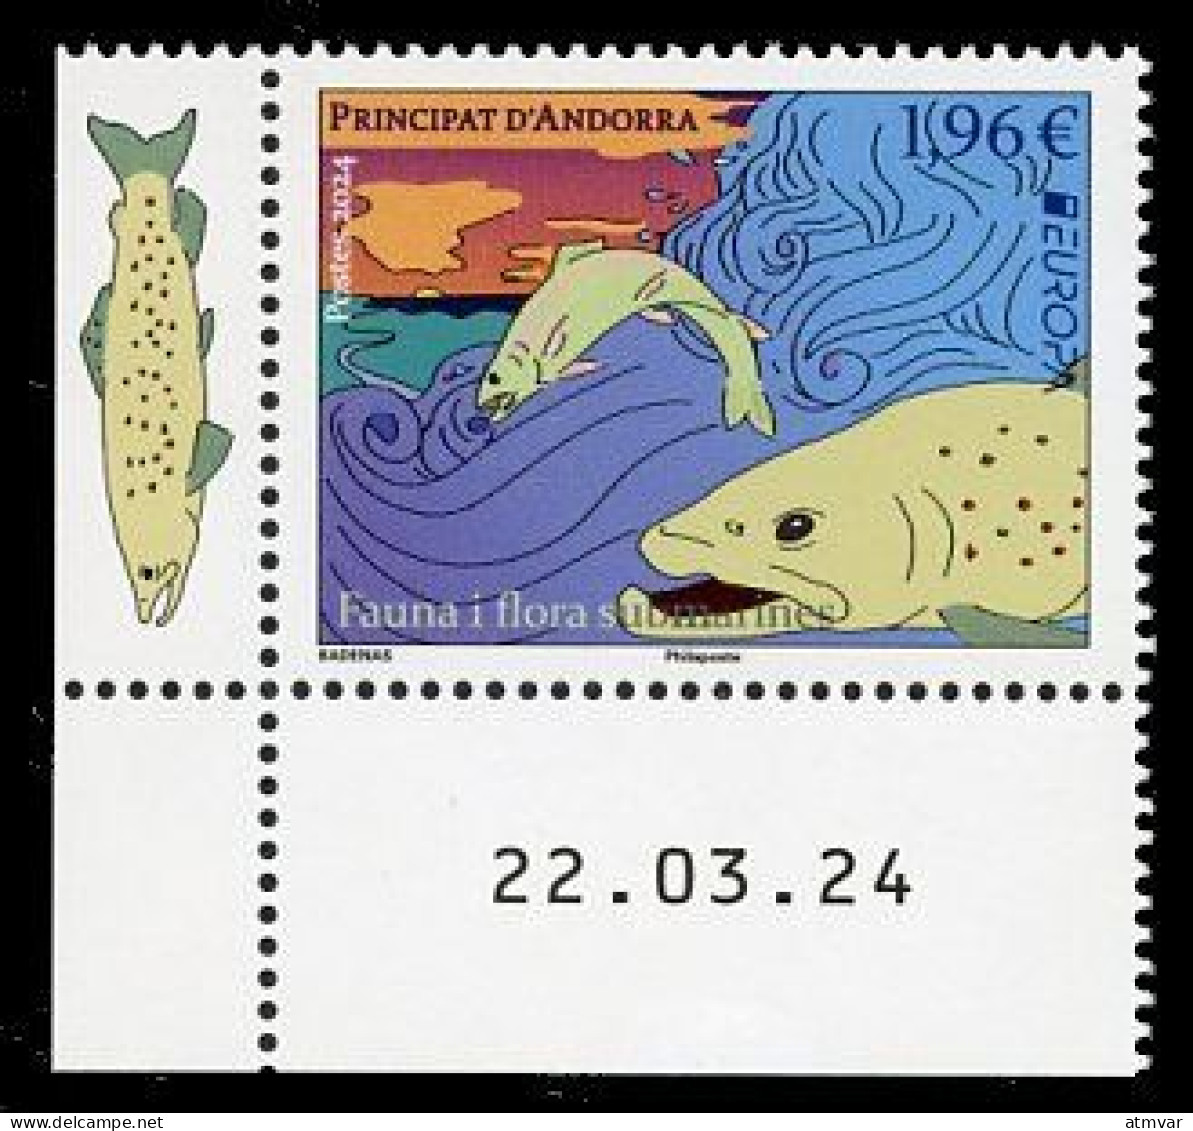 ANDORRA Postes (2024) EUROPA Fauna I Flora Submarines, Truite, Arc-en-ciel, Trucha, Salmo Trutta Fario, Trout  Coin Daté - Unused Stamps